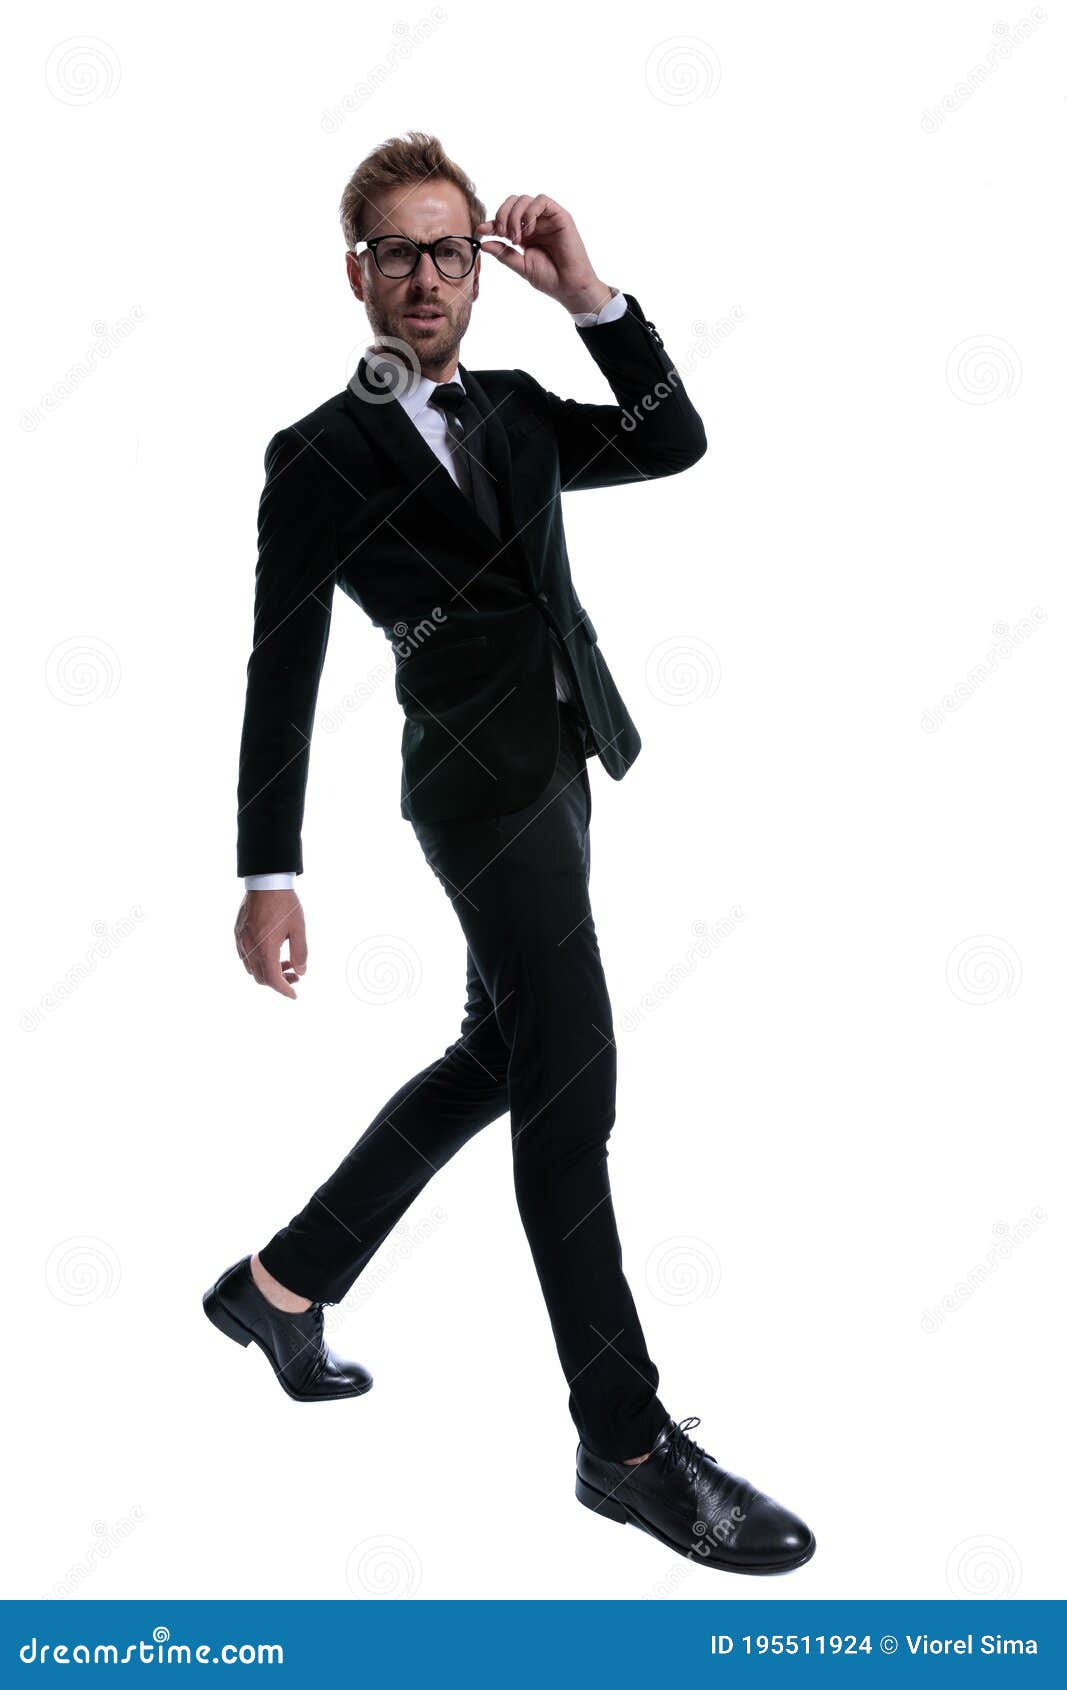 7,693 Black Man Suit Walking Stock Photos - Free & Royalty-Free